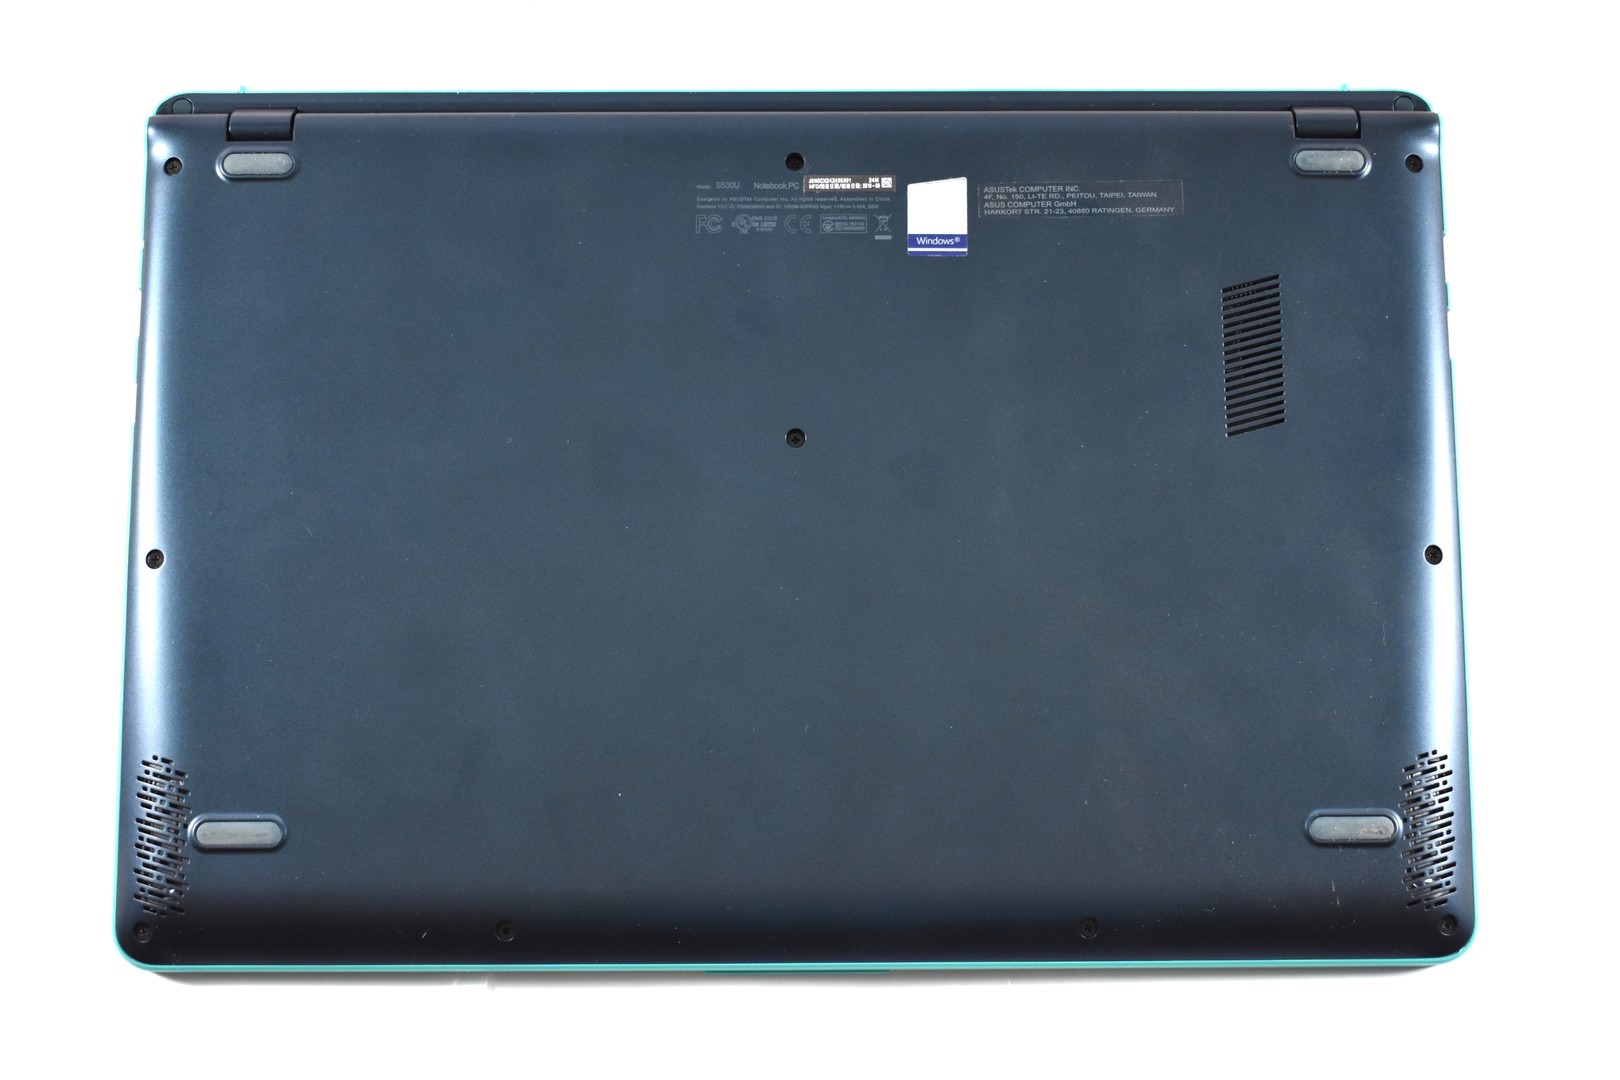 Đánh giá Asus VivoBook S15 S530UN: Laptop màu xanh dương cuốn hút, Chuyên trang tư vấn laptop